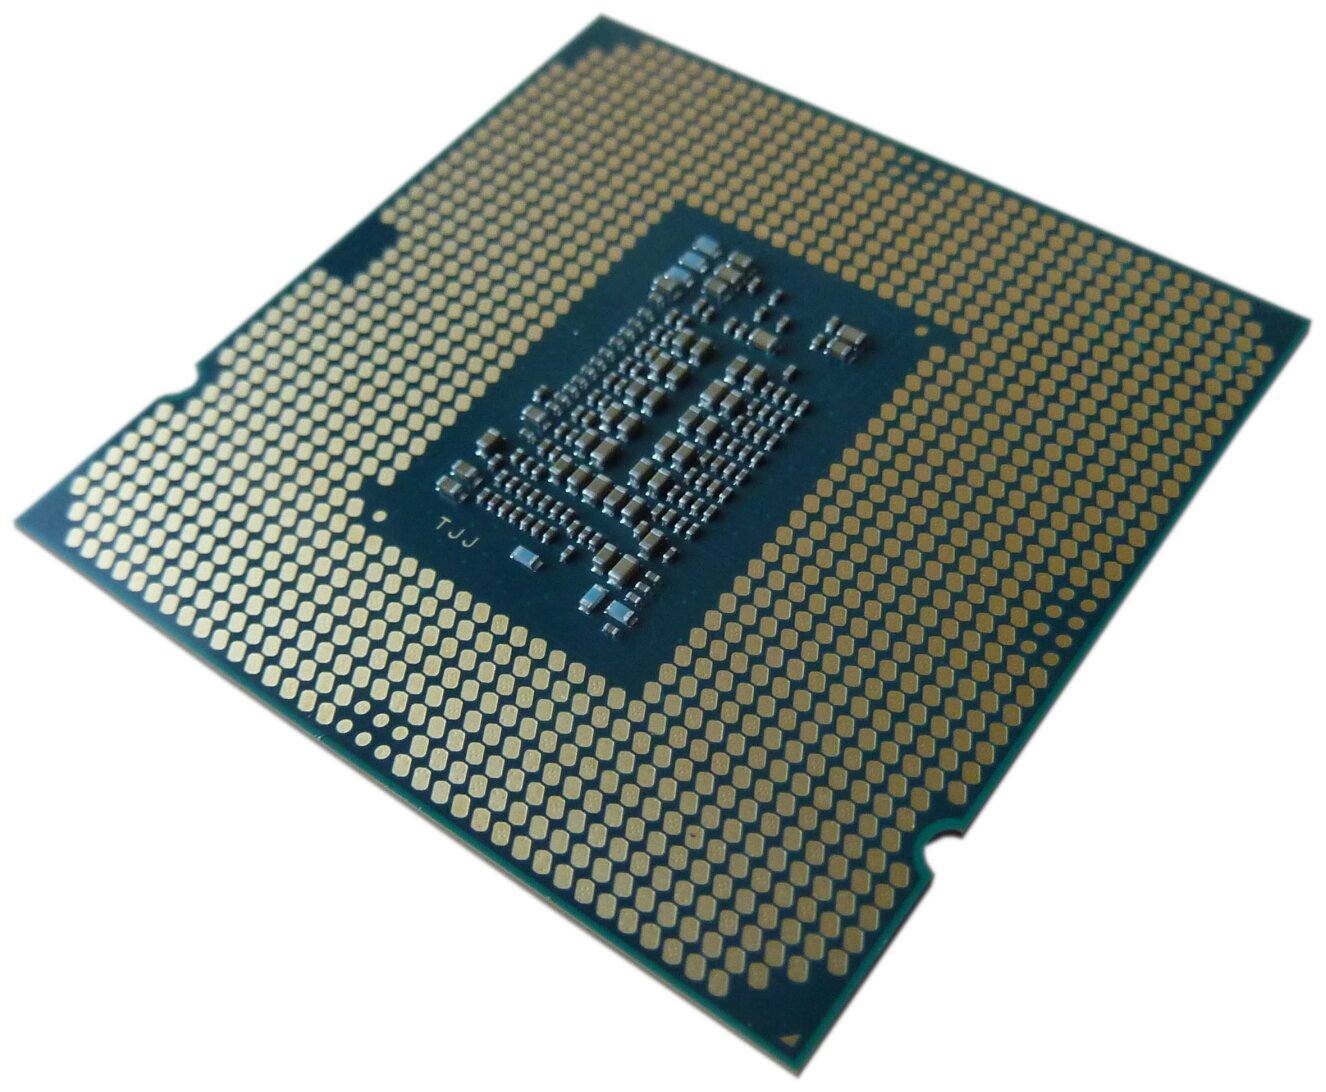 Фото Процессор INTEL 1200 i3-10100 OEM 6M 3.60 GHz 4/8 Core Comet Lake 65 Вт HD630